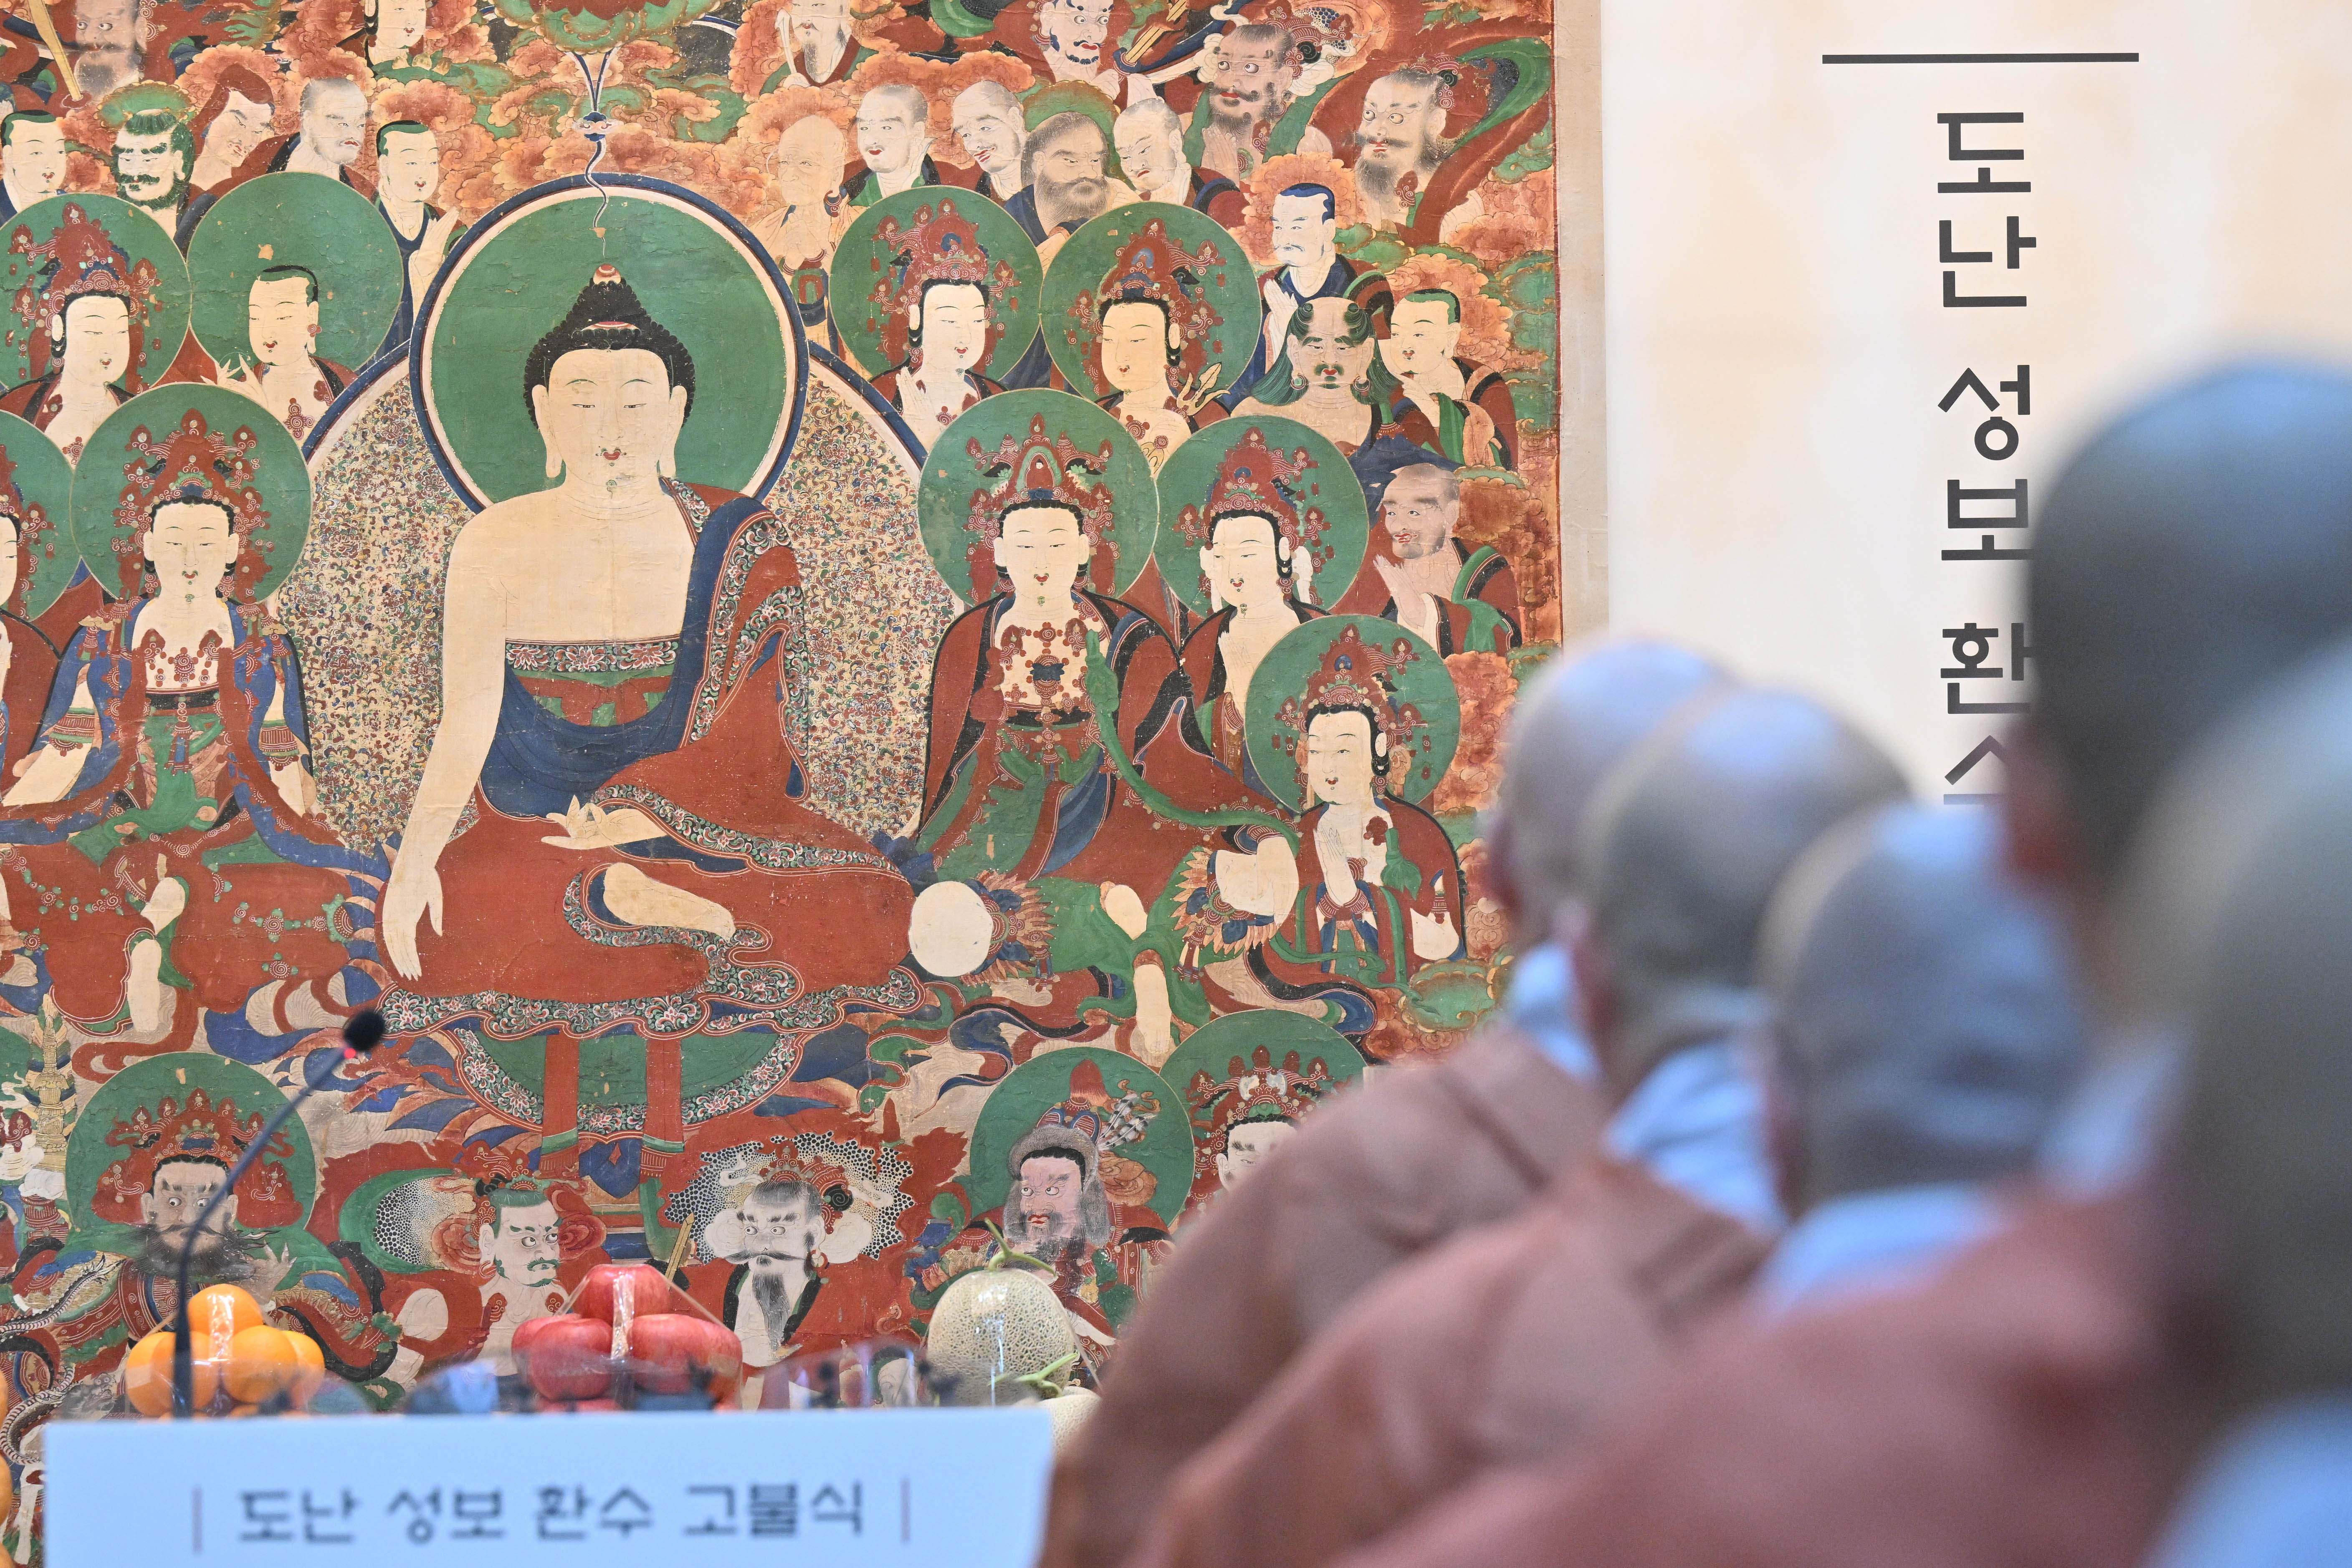 23일 서울 종로구 한국불교역사문화기념관에서 도난 성보 환수 고불식이 열리고 있다. 홍윤기 기자